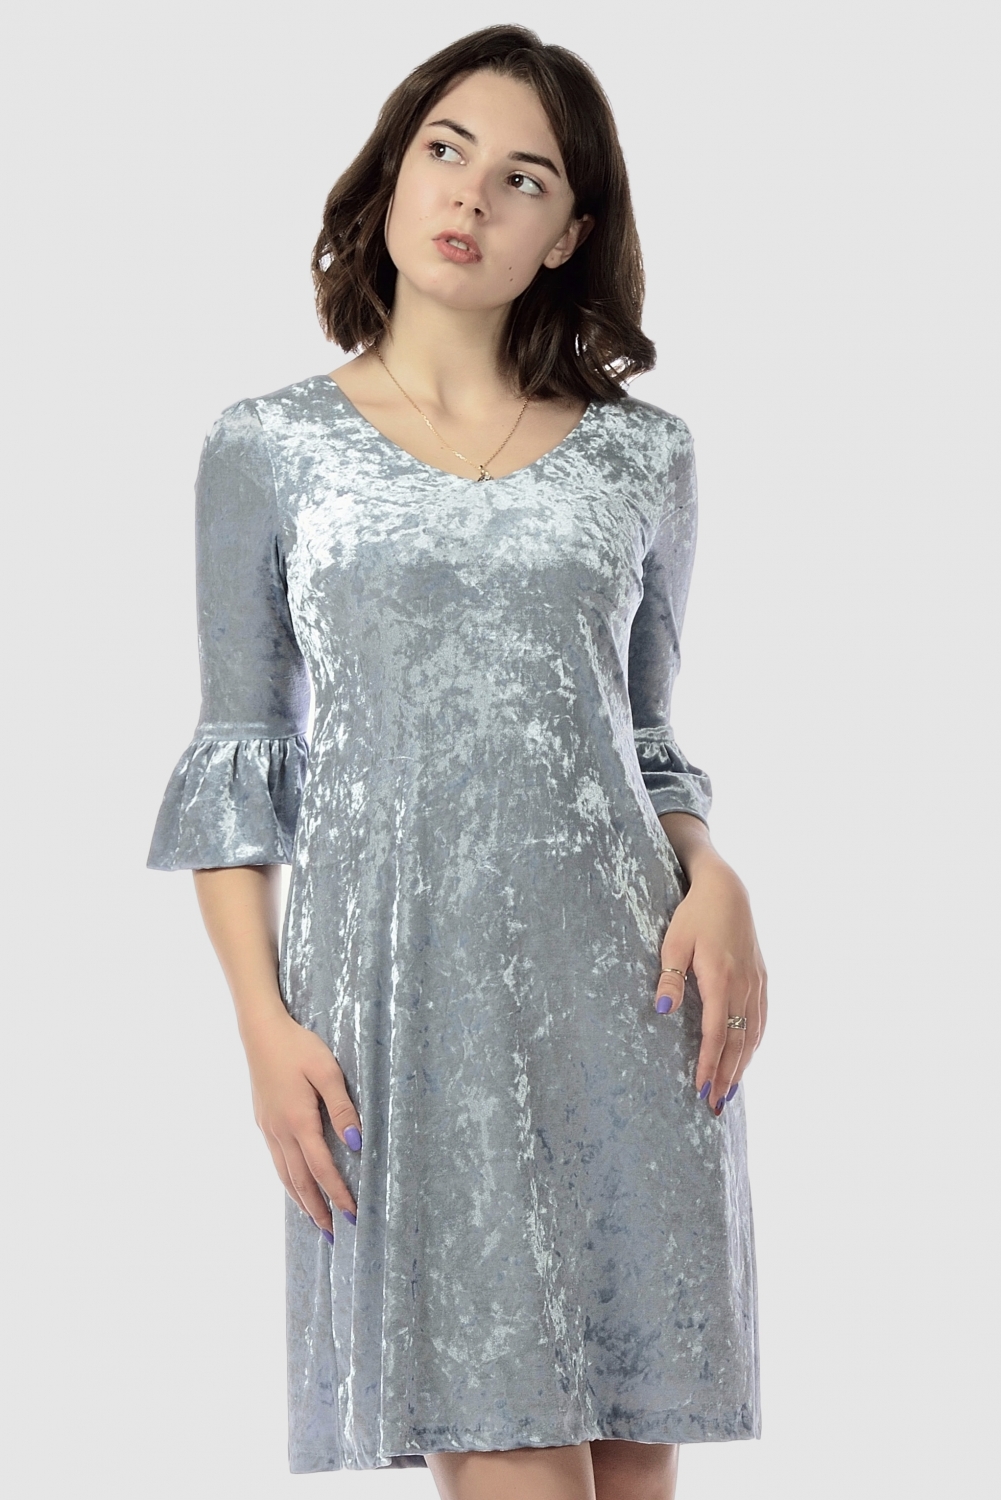 Купить платье трапеция из бархата, серебристое в интернет магазине mirplatev.ru недорого, от 6700.0000 рублей